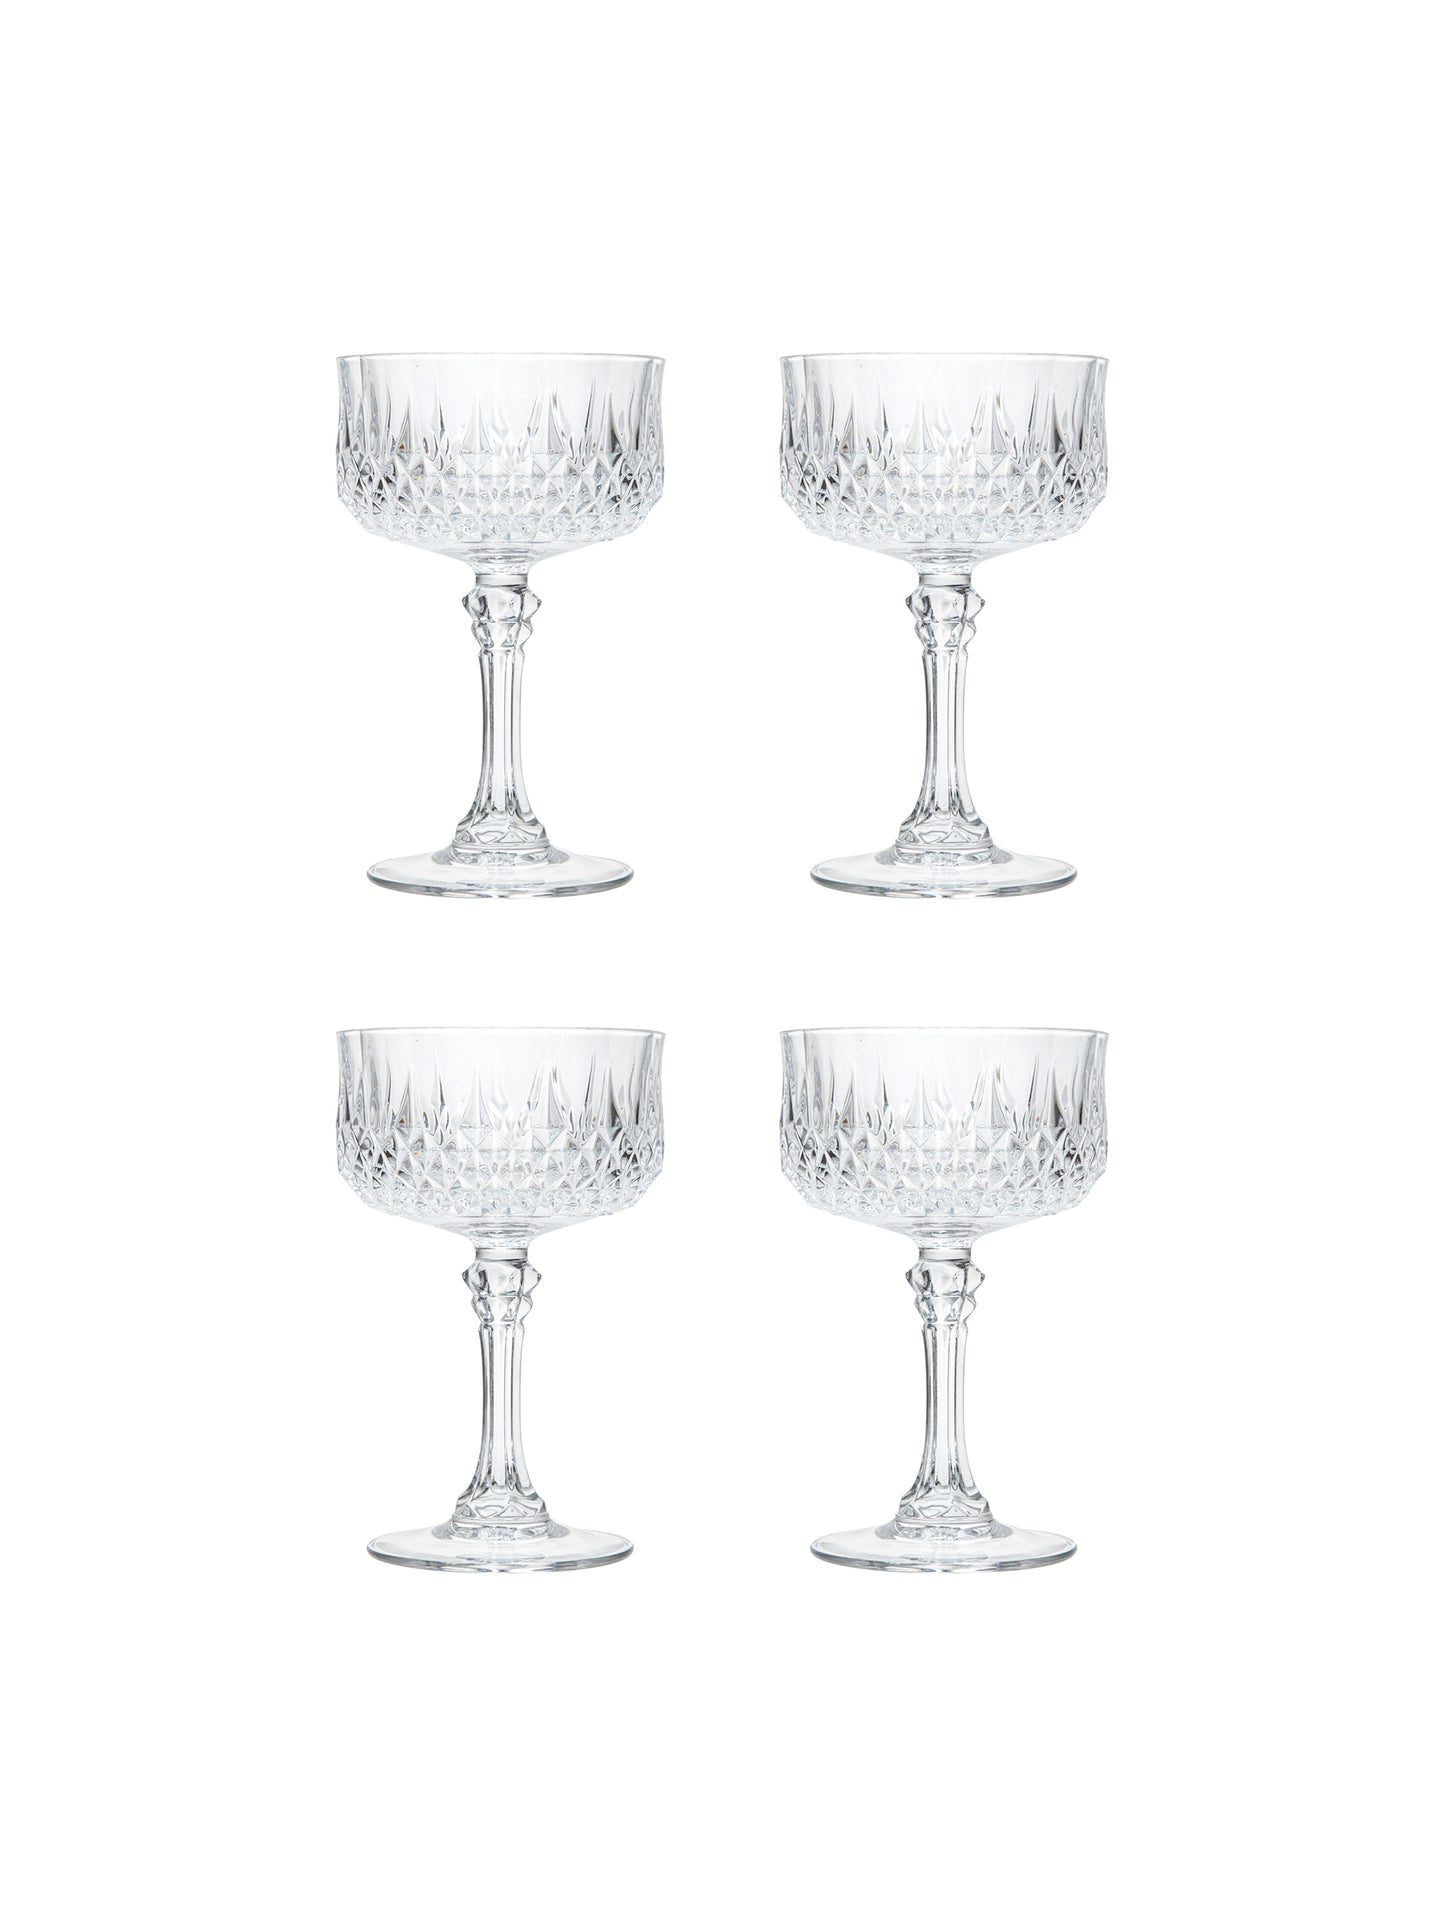 Vintage Cristal D'Arques Longchamp Champagne Coupes Glasses